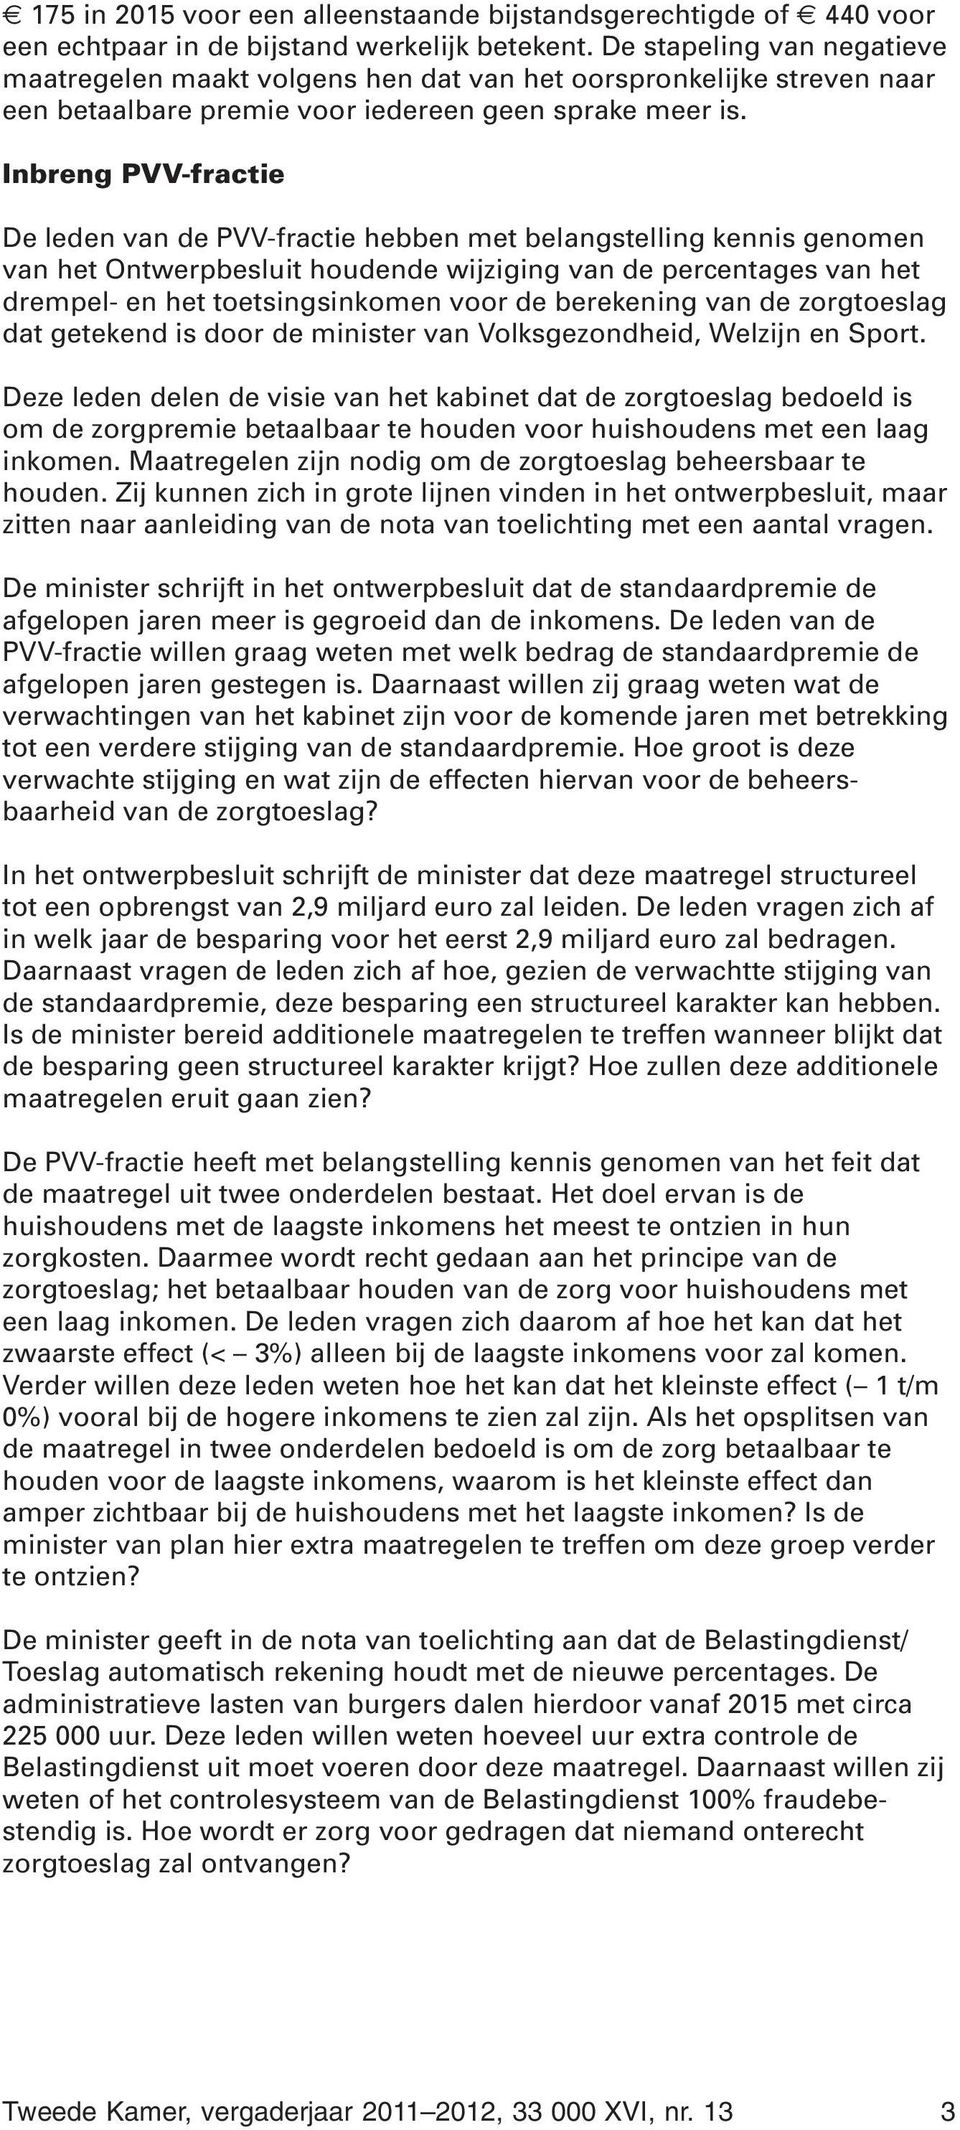 Inbreng PVV-fractie De leden van de PVV-fractie hebben met belangstelling kennis genomen van het Ontwerpbesluit houdende wijziging van de percentages van het drempel- en het toetsingsinkomen voor de